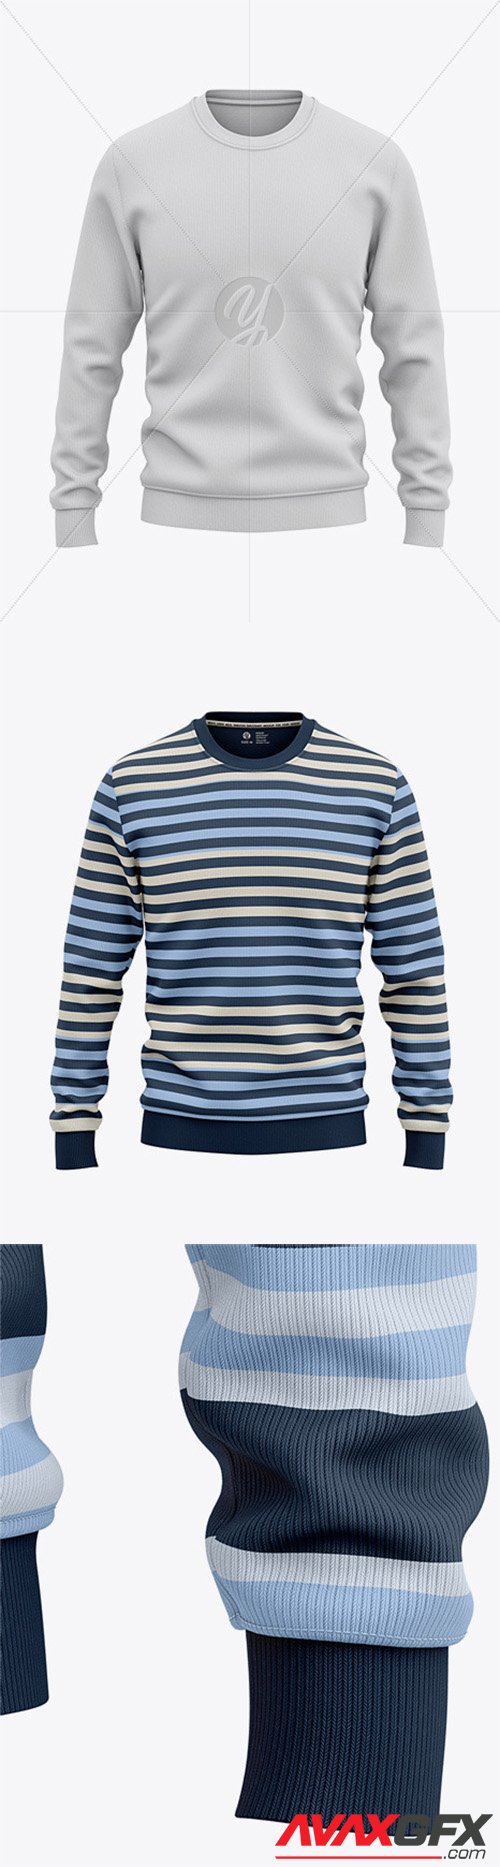 Men's Sweatshirt Mockup - Front View Of Sweater 55596